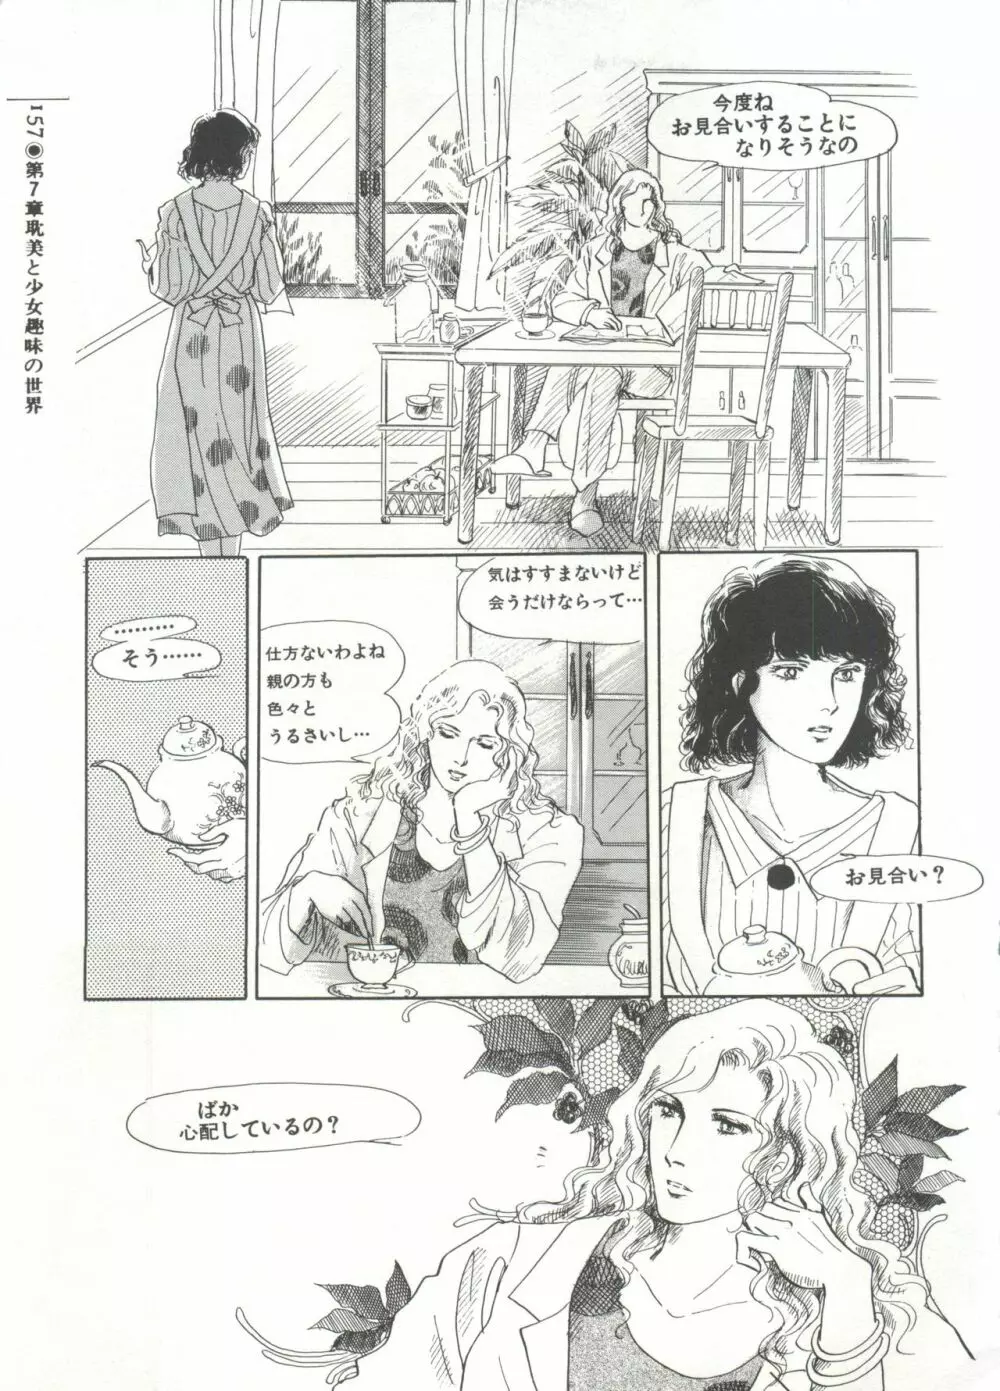 [Anthology] 美少女症候群(2) Lolita syndrome (よろず) 160ページ